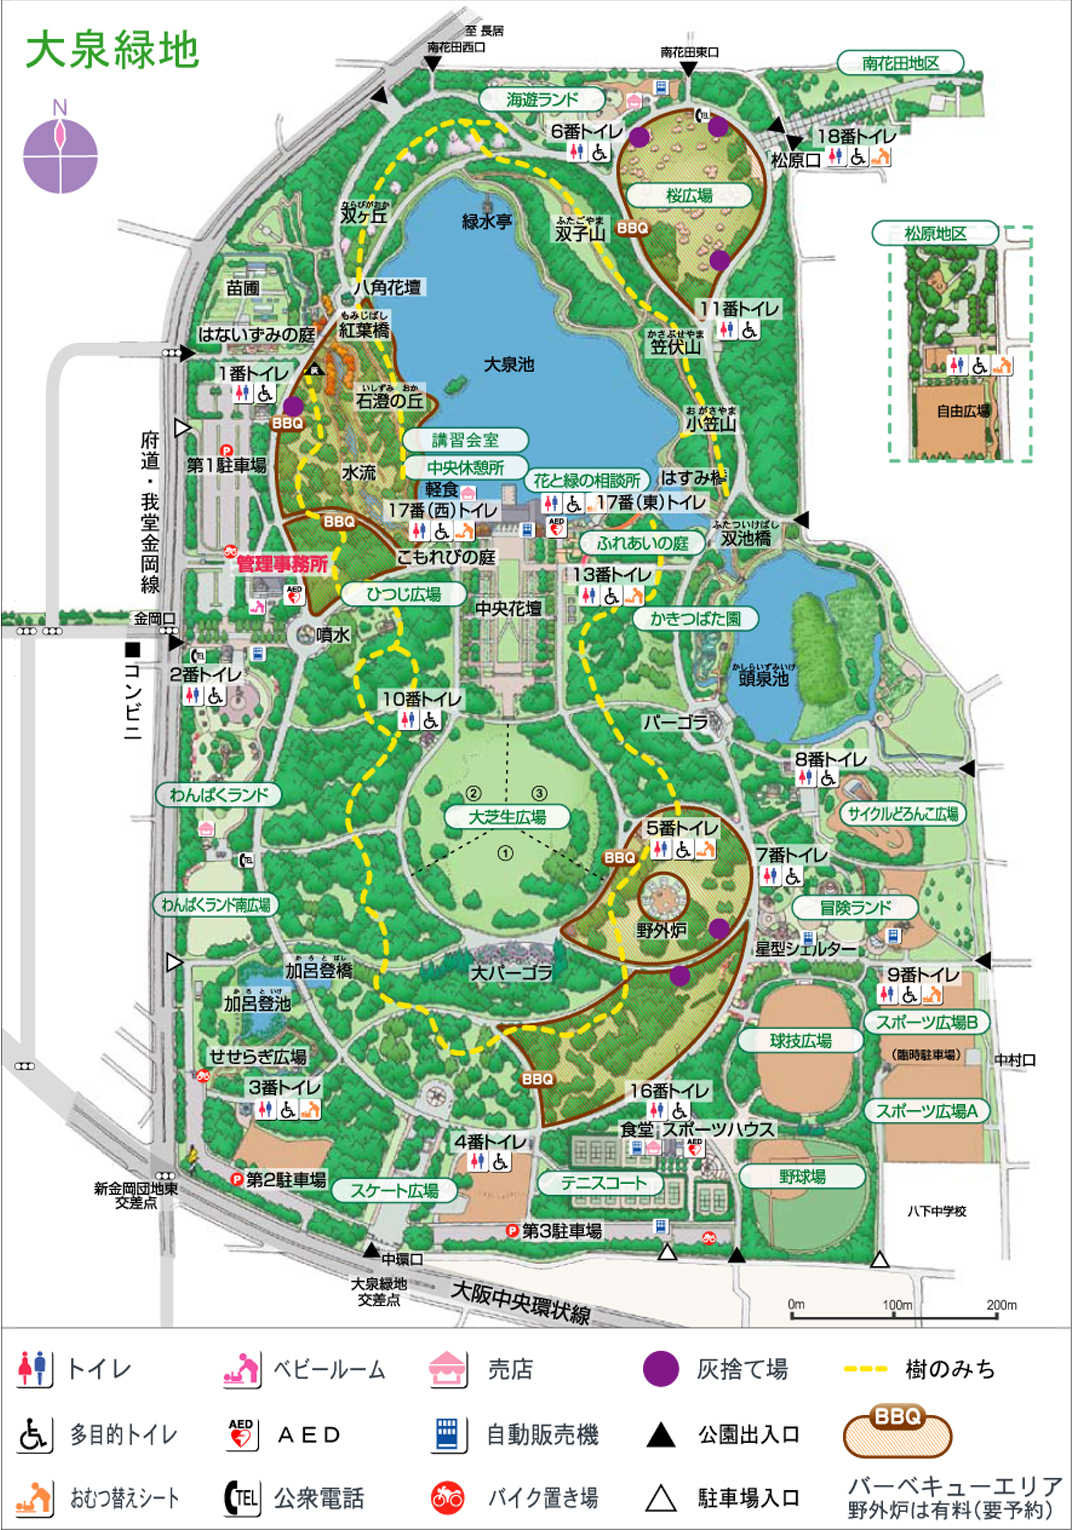 大泉緑地公園バーベキューエリアパーフェクトガイド 21年最新版 大阪のレンタルバーベキューならbbqなう